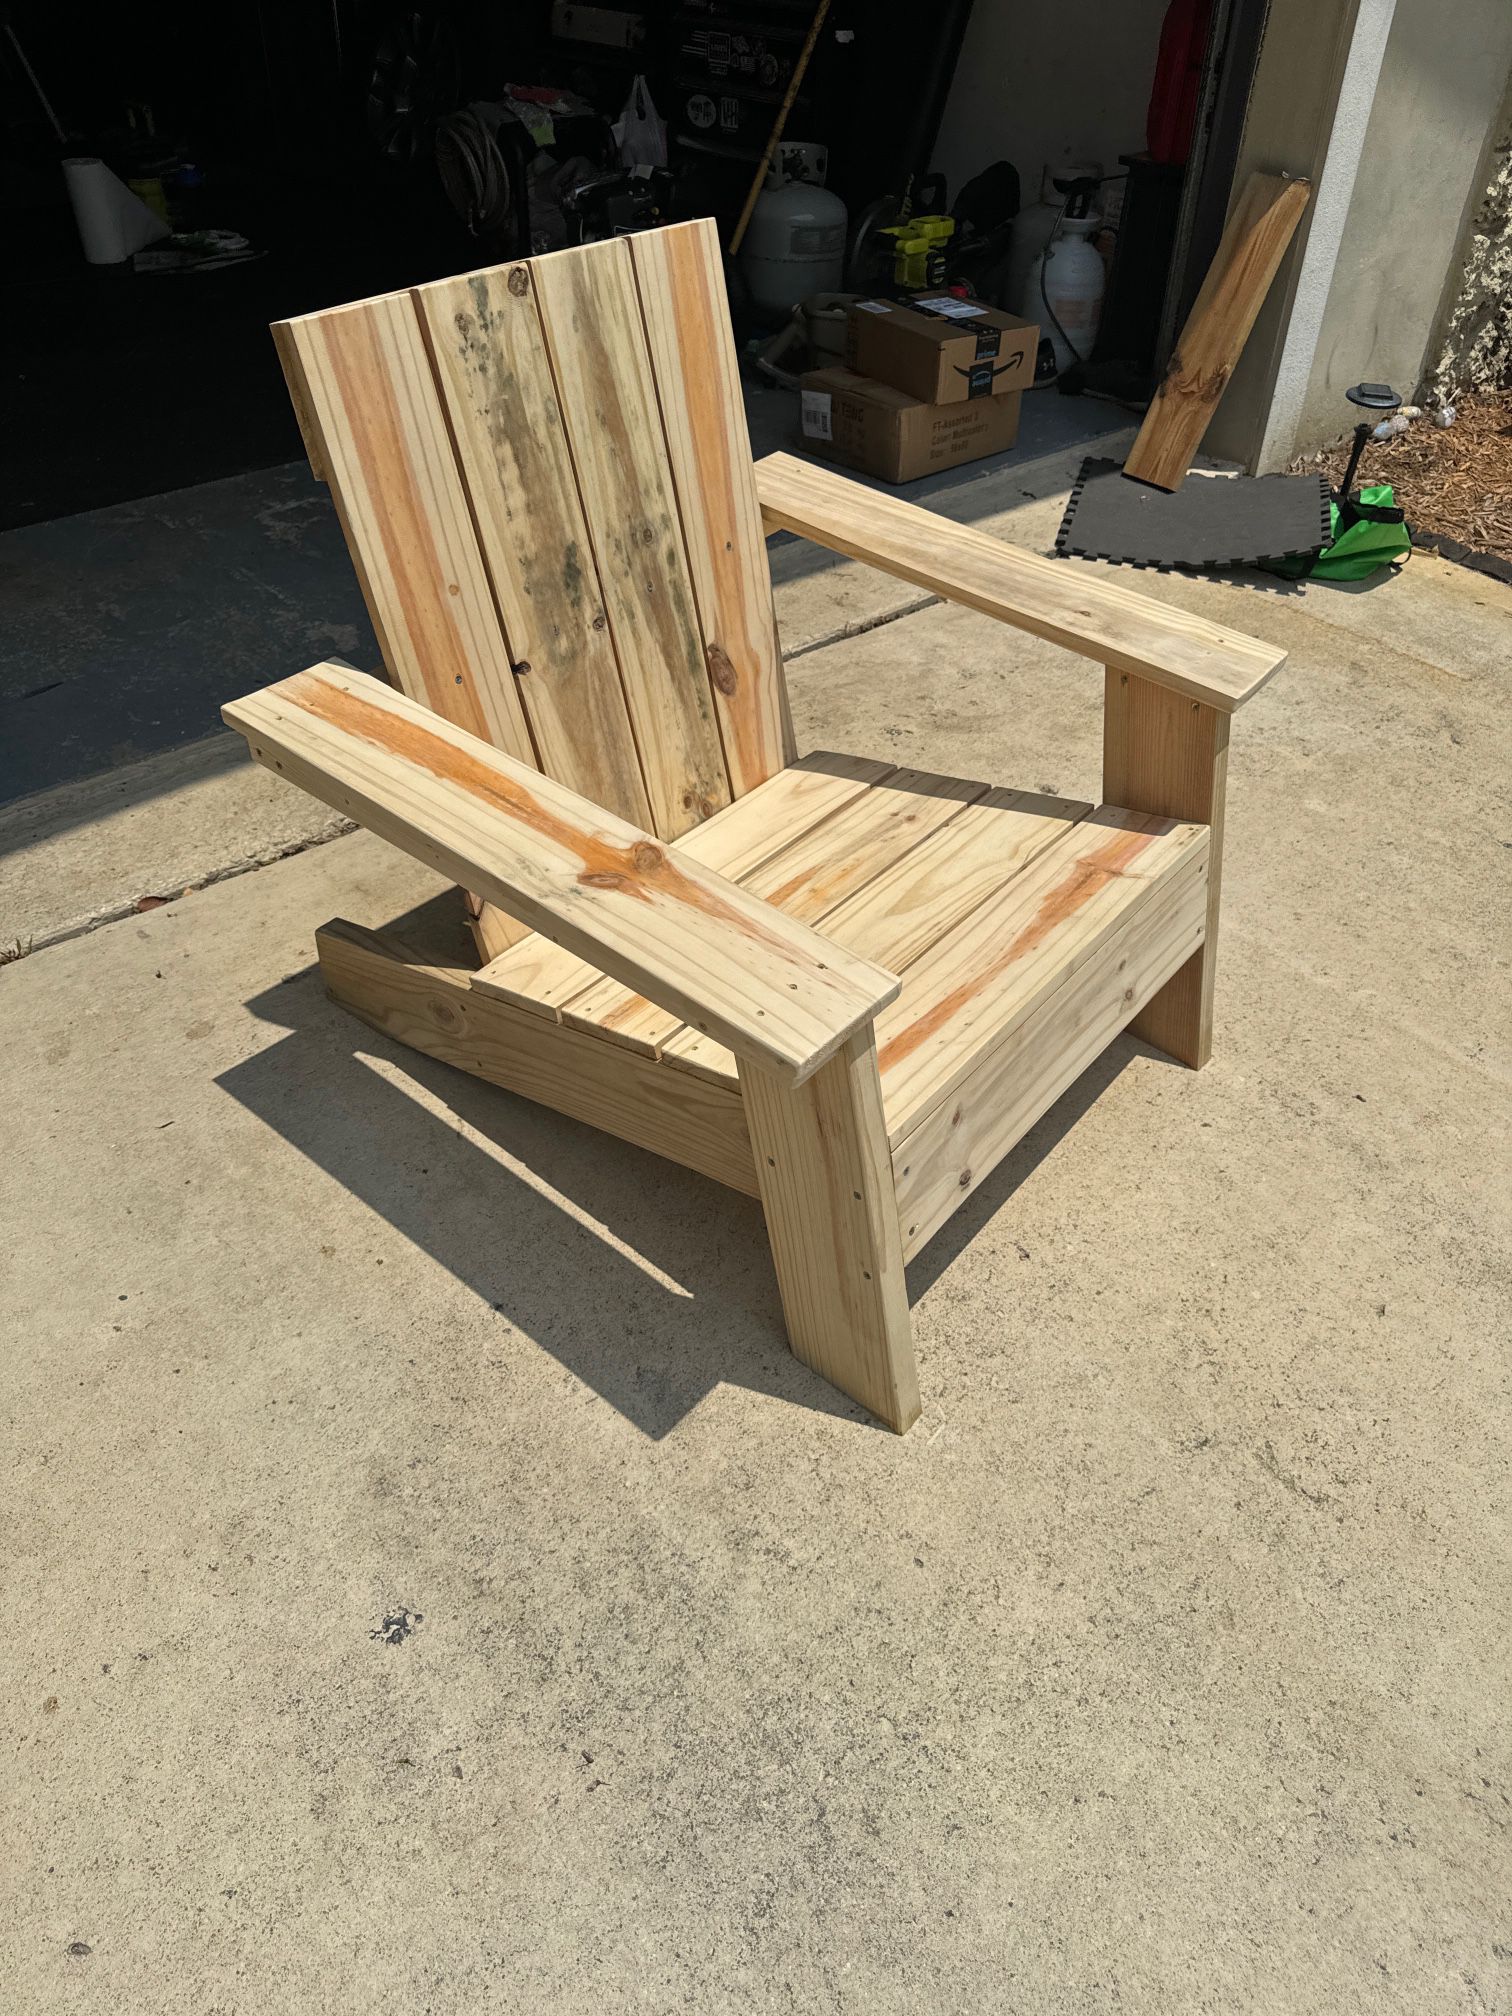 Adirondack Chairs